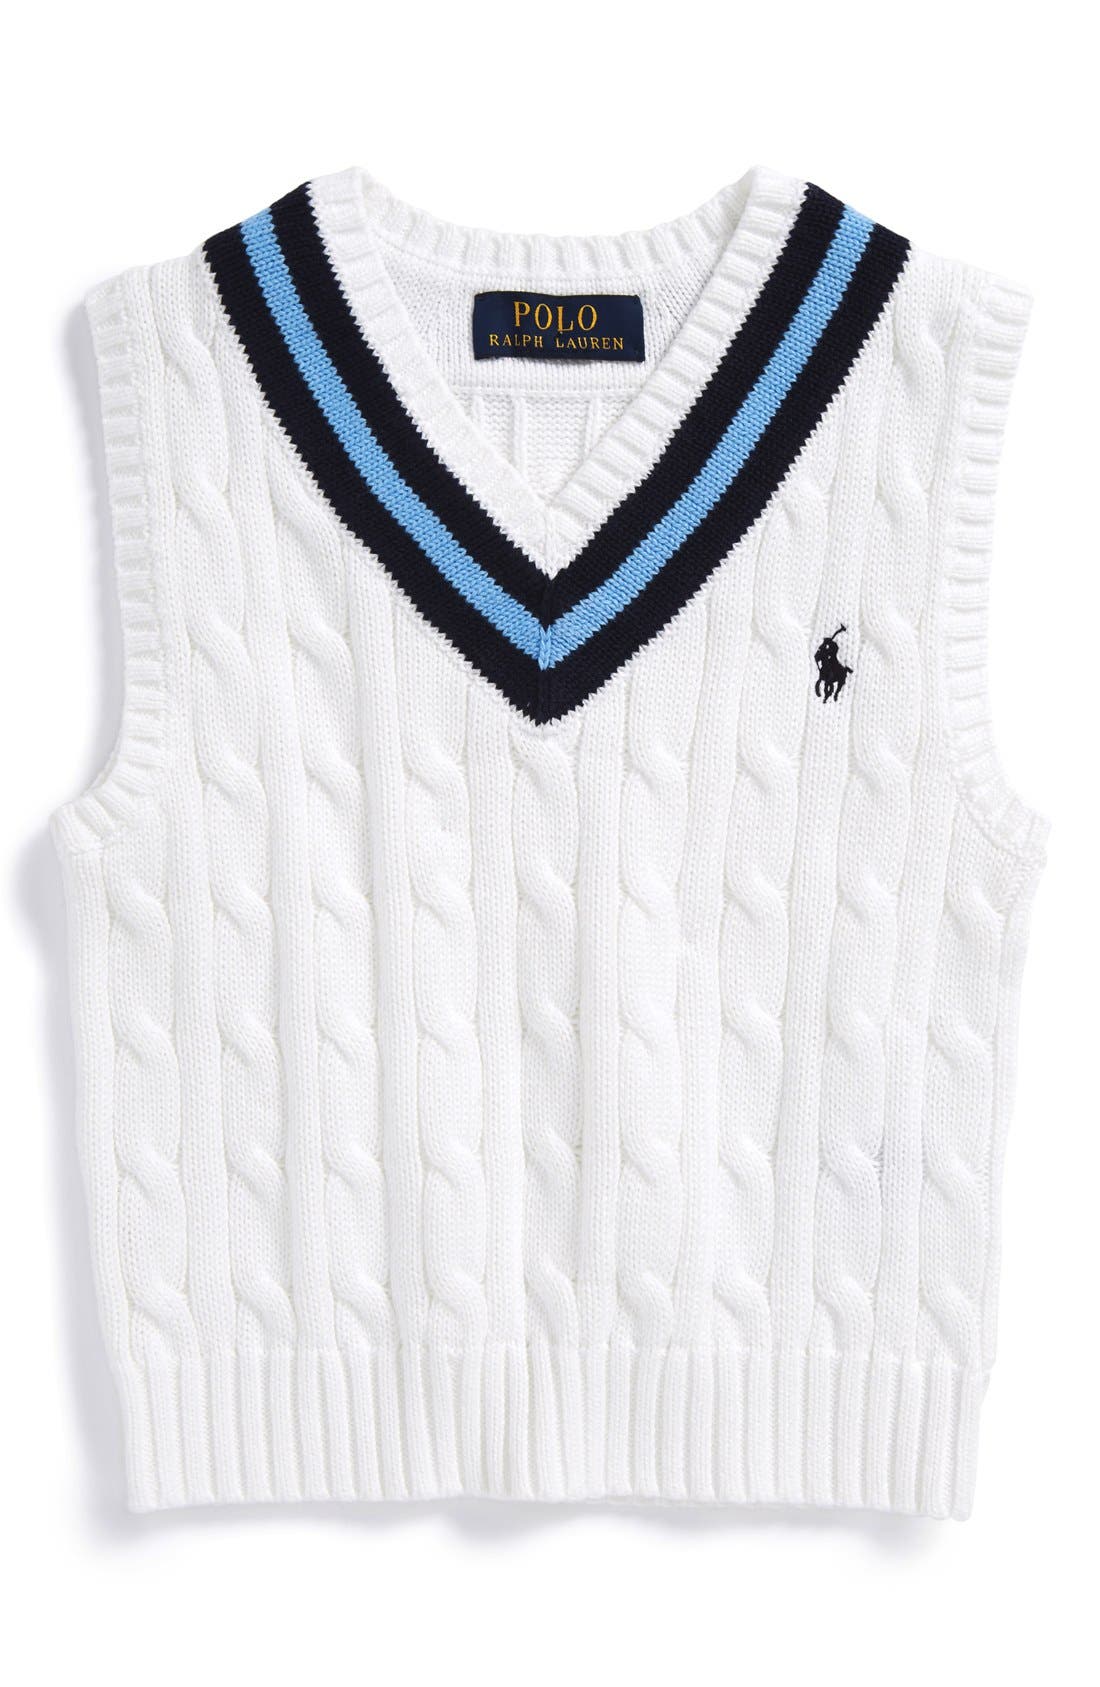 cricket sweater ralph lauren